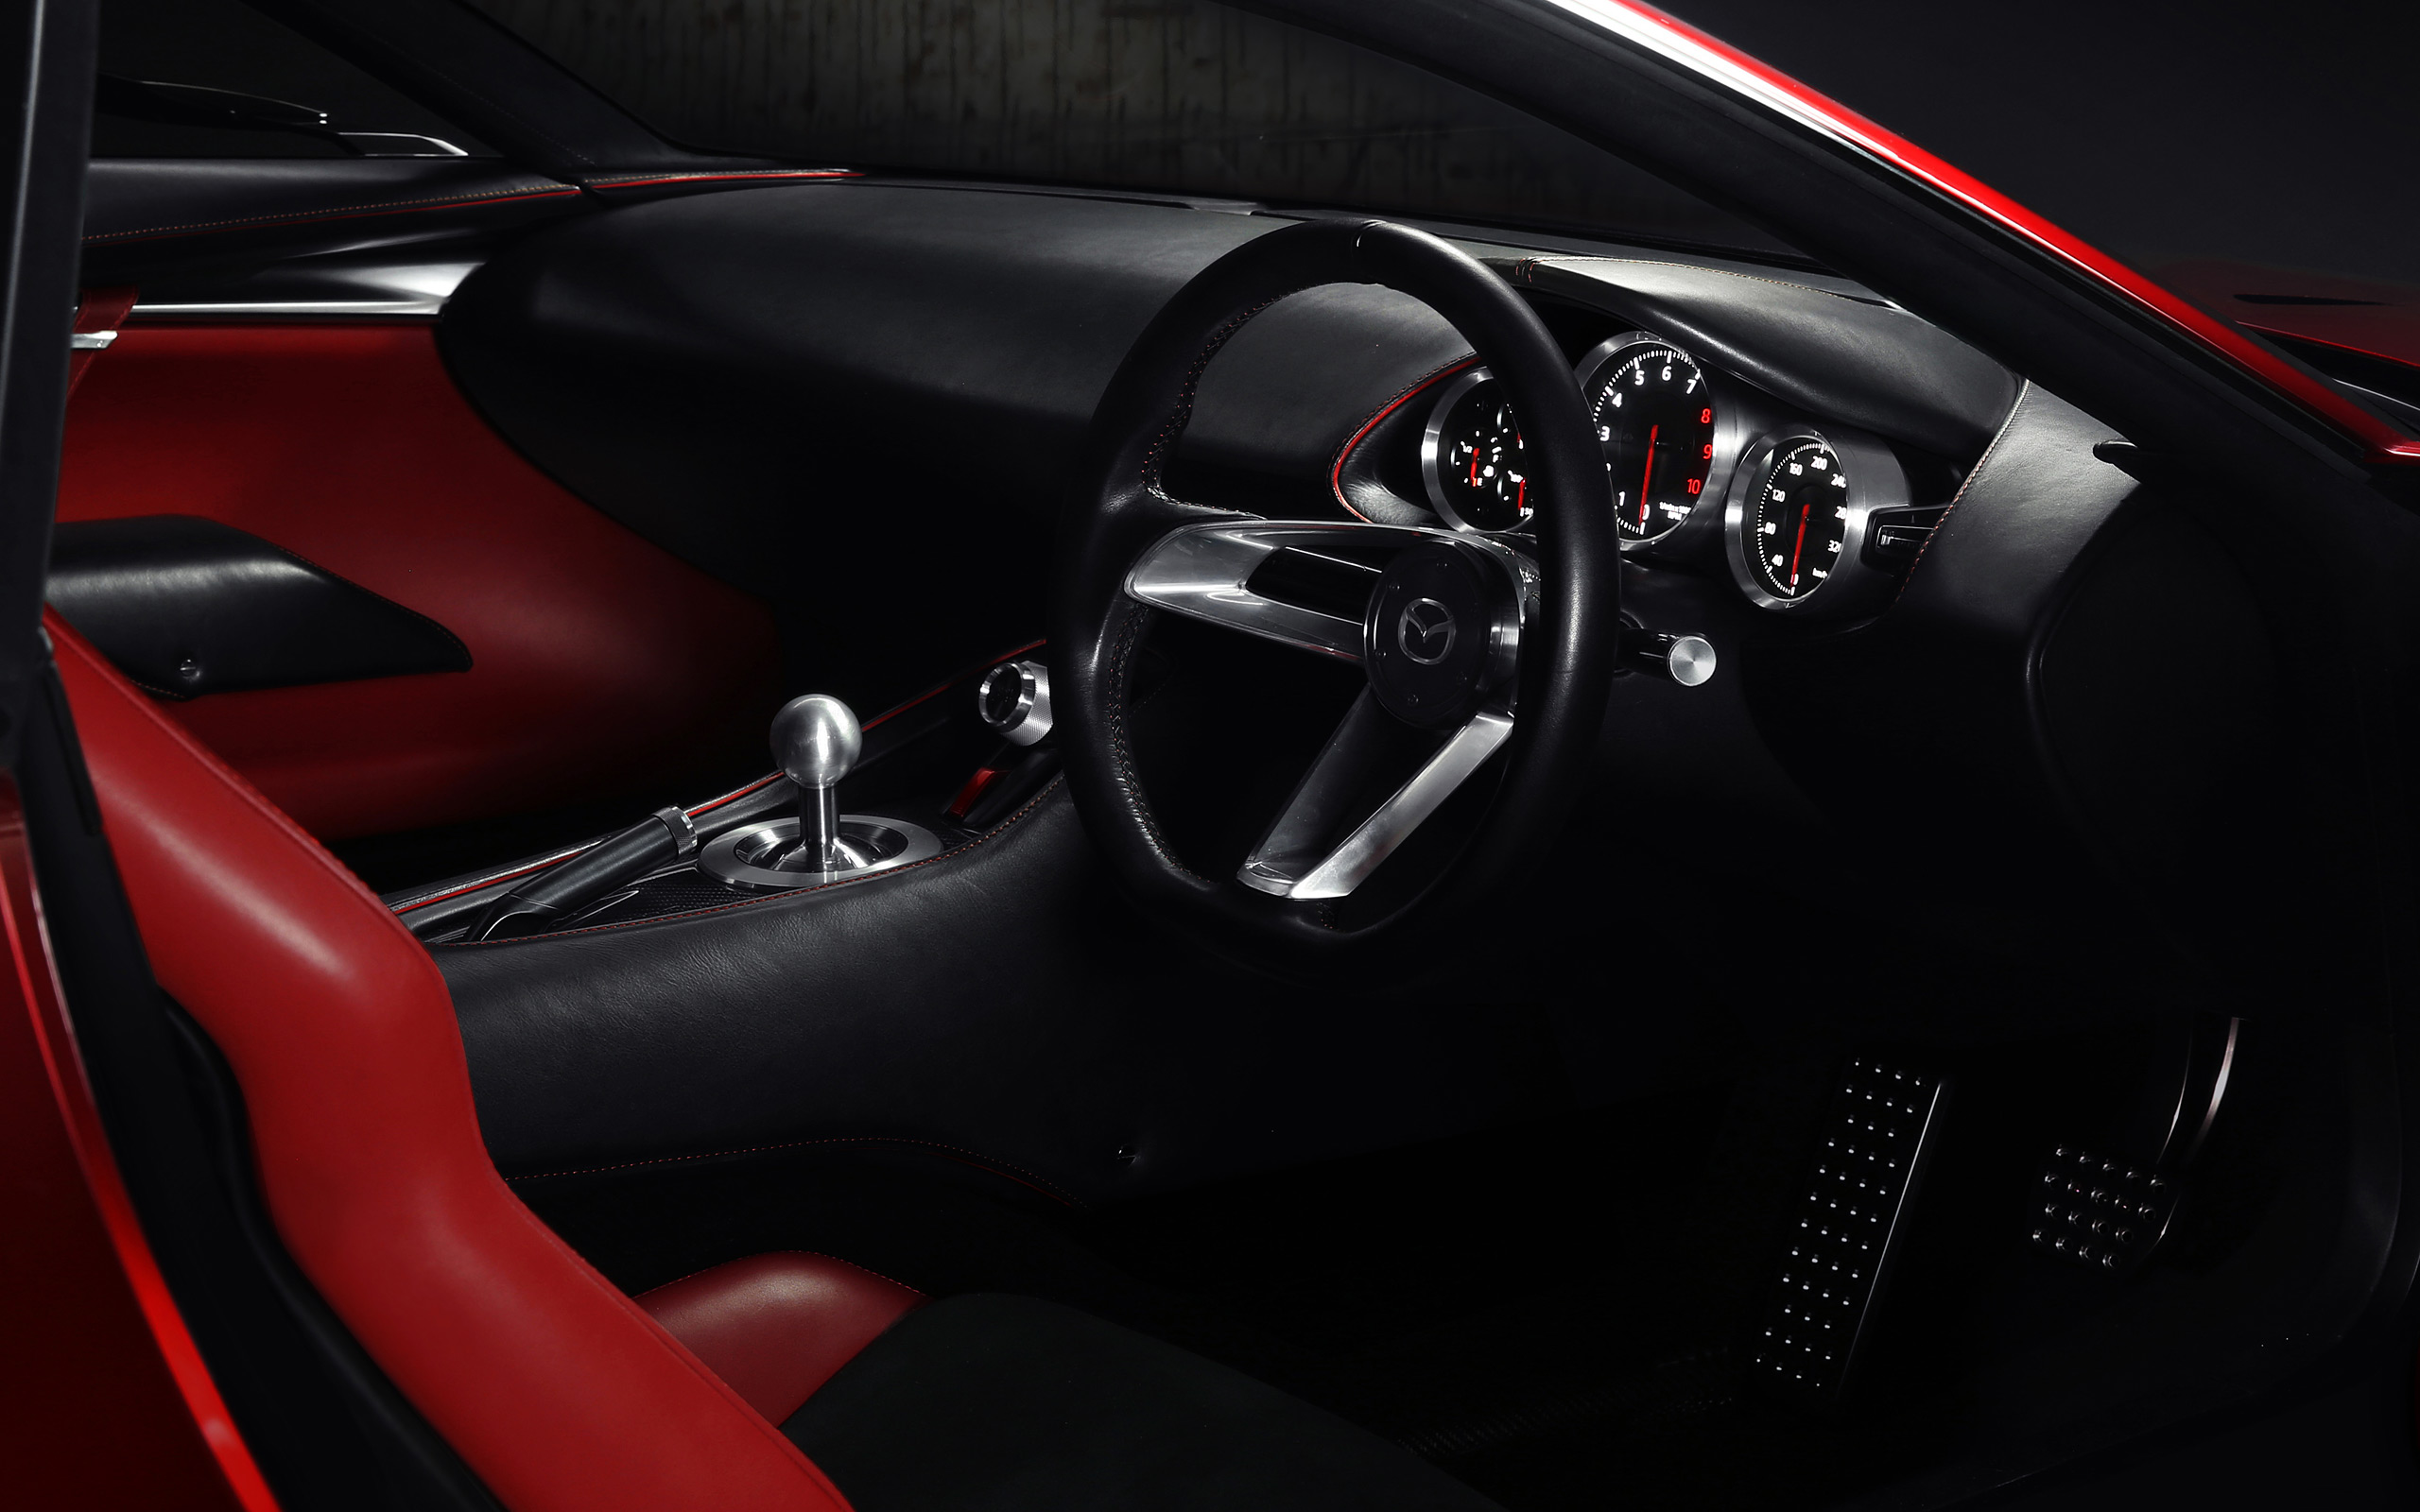  2015 Mazda RX-Vision Concept Wallpaper.